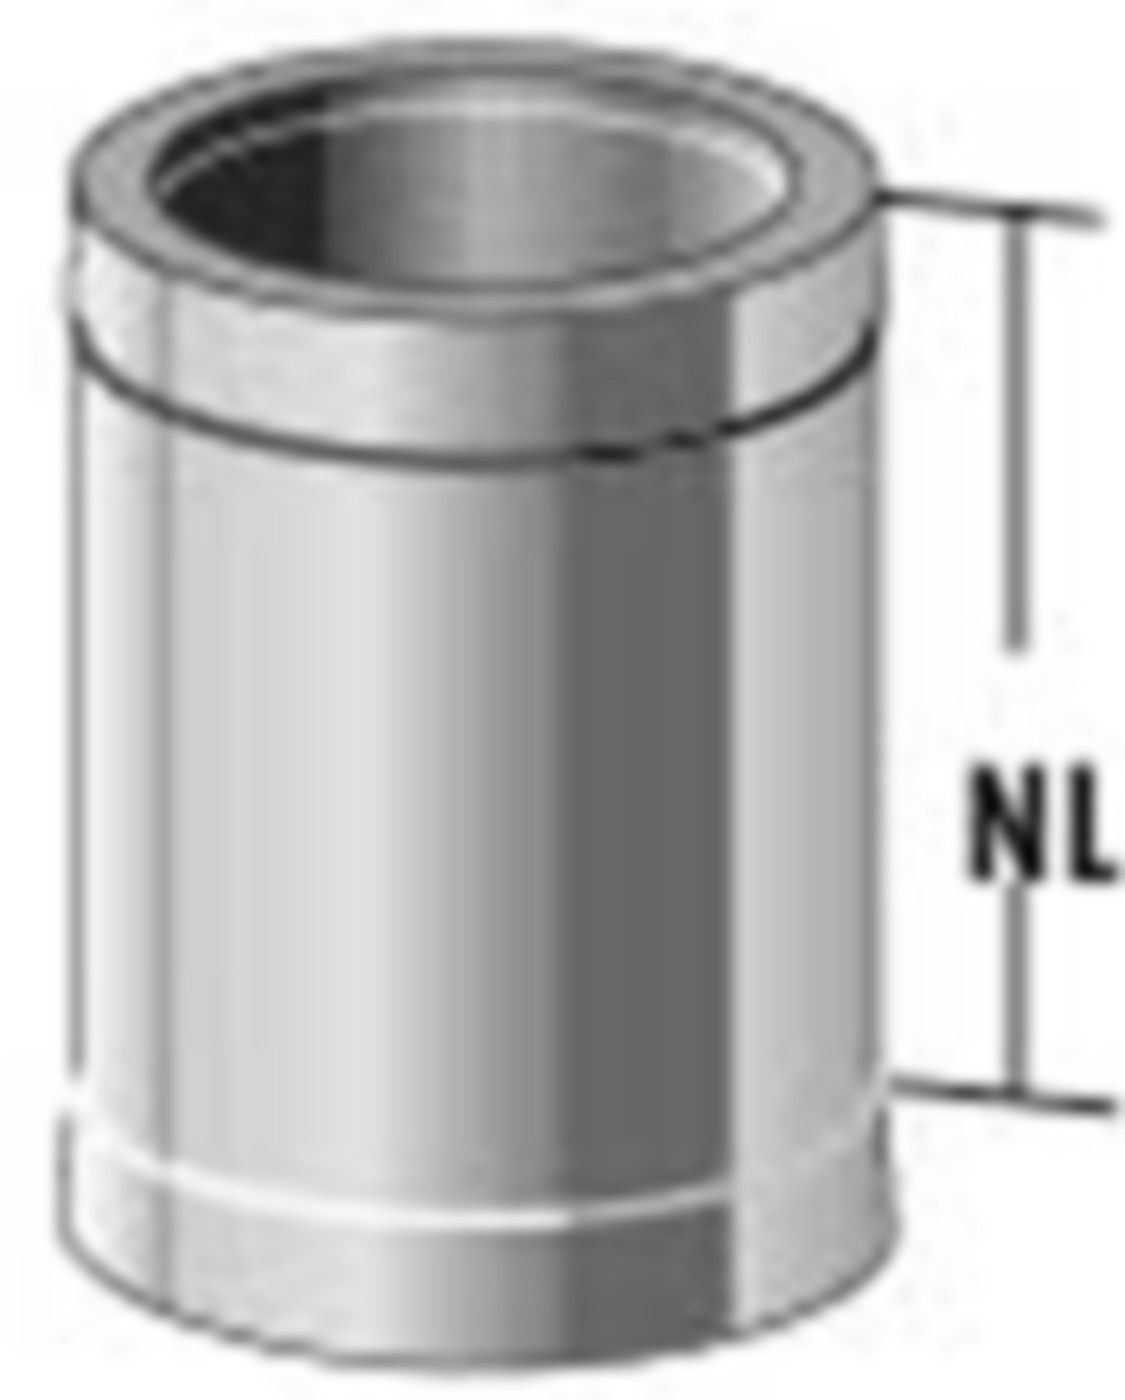 Alkon Rohrelement d 180 mm L=165 mm 6KDR124180 - Kaminsystem V4A doppelwandig